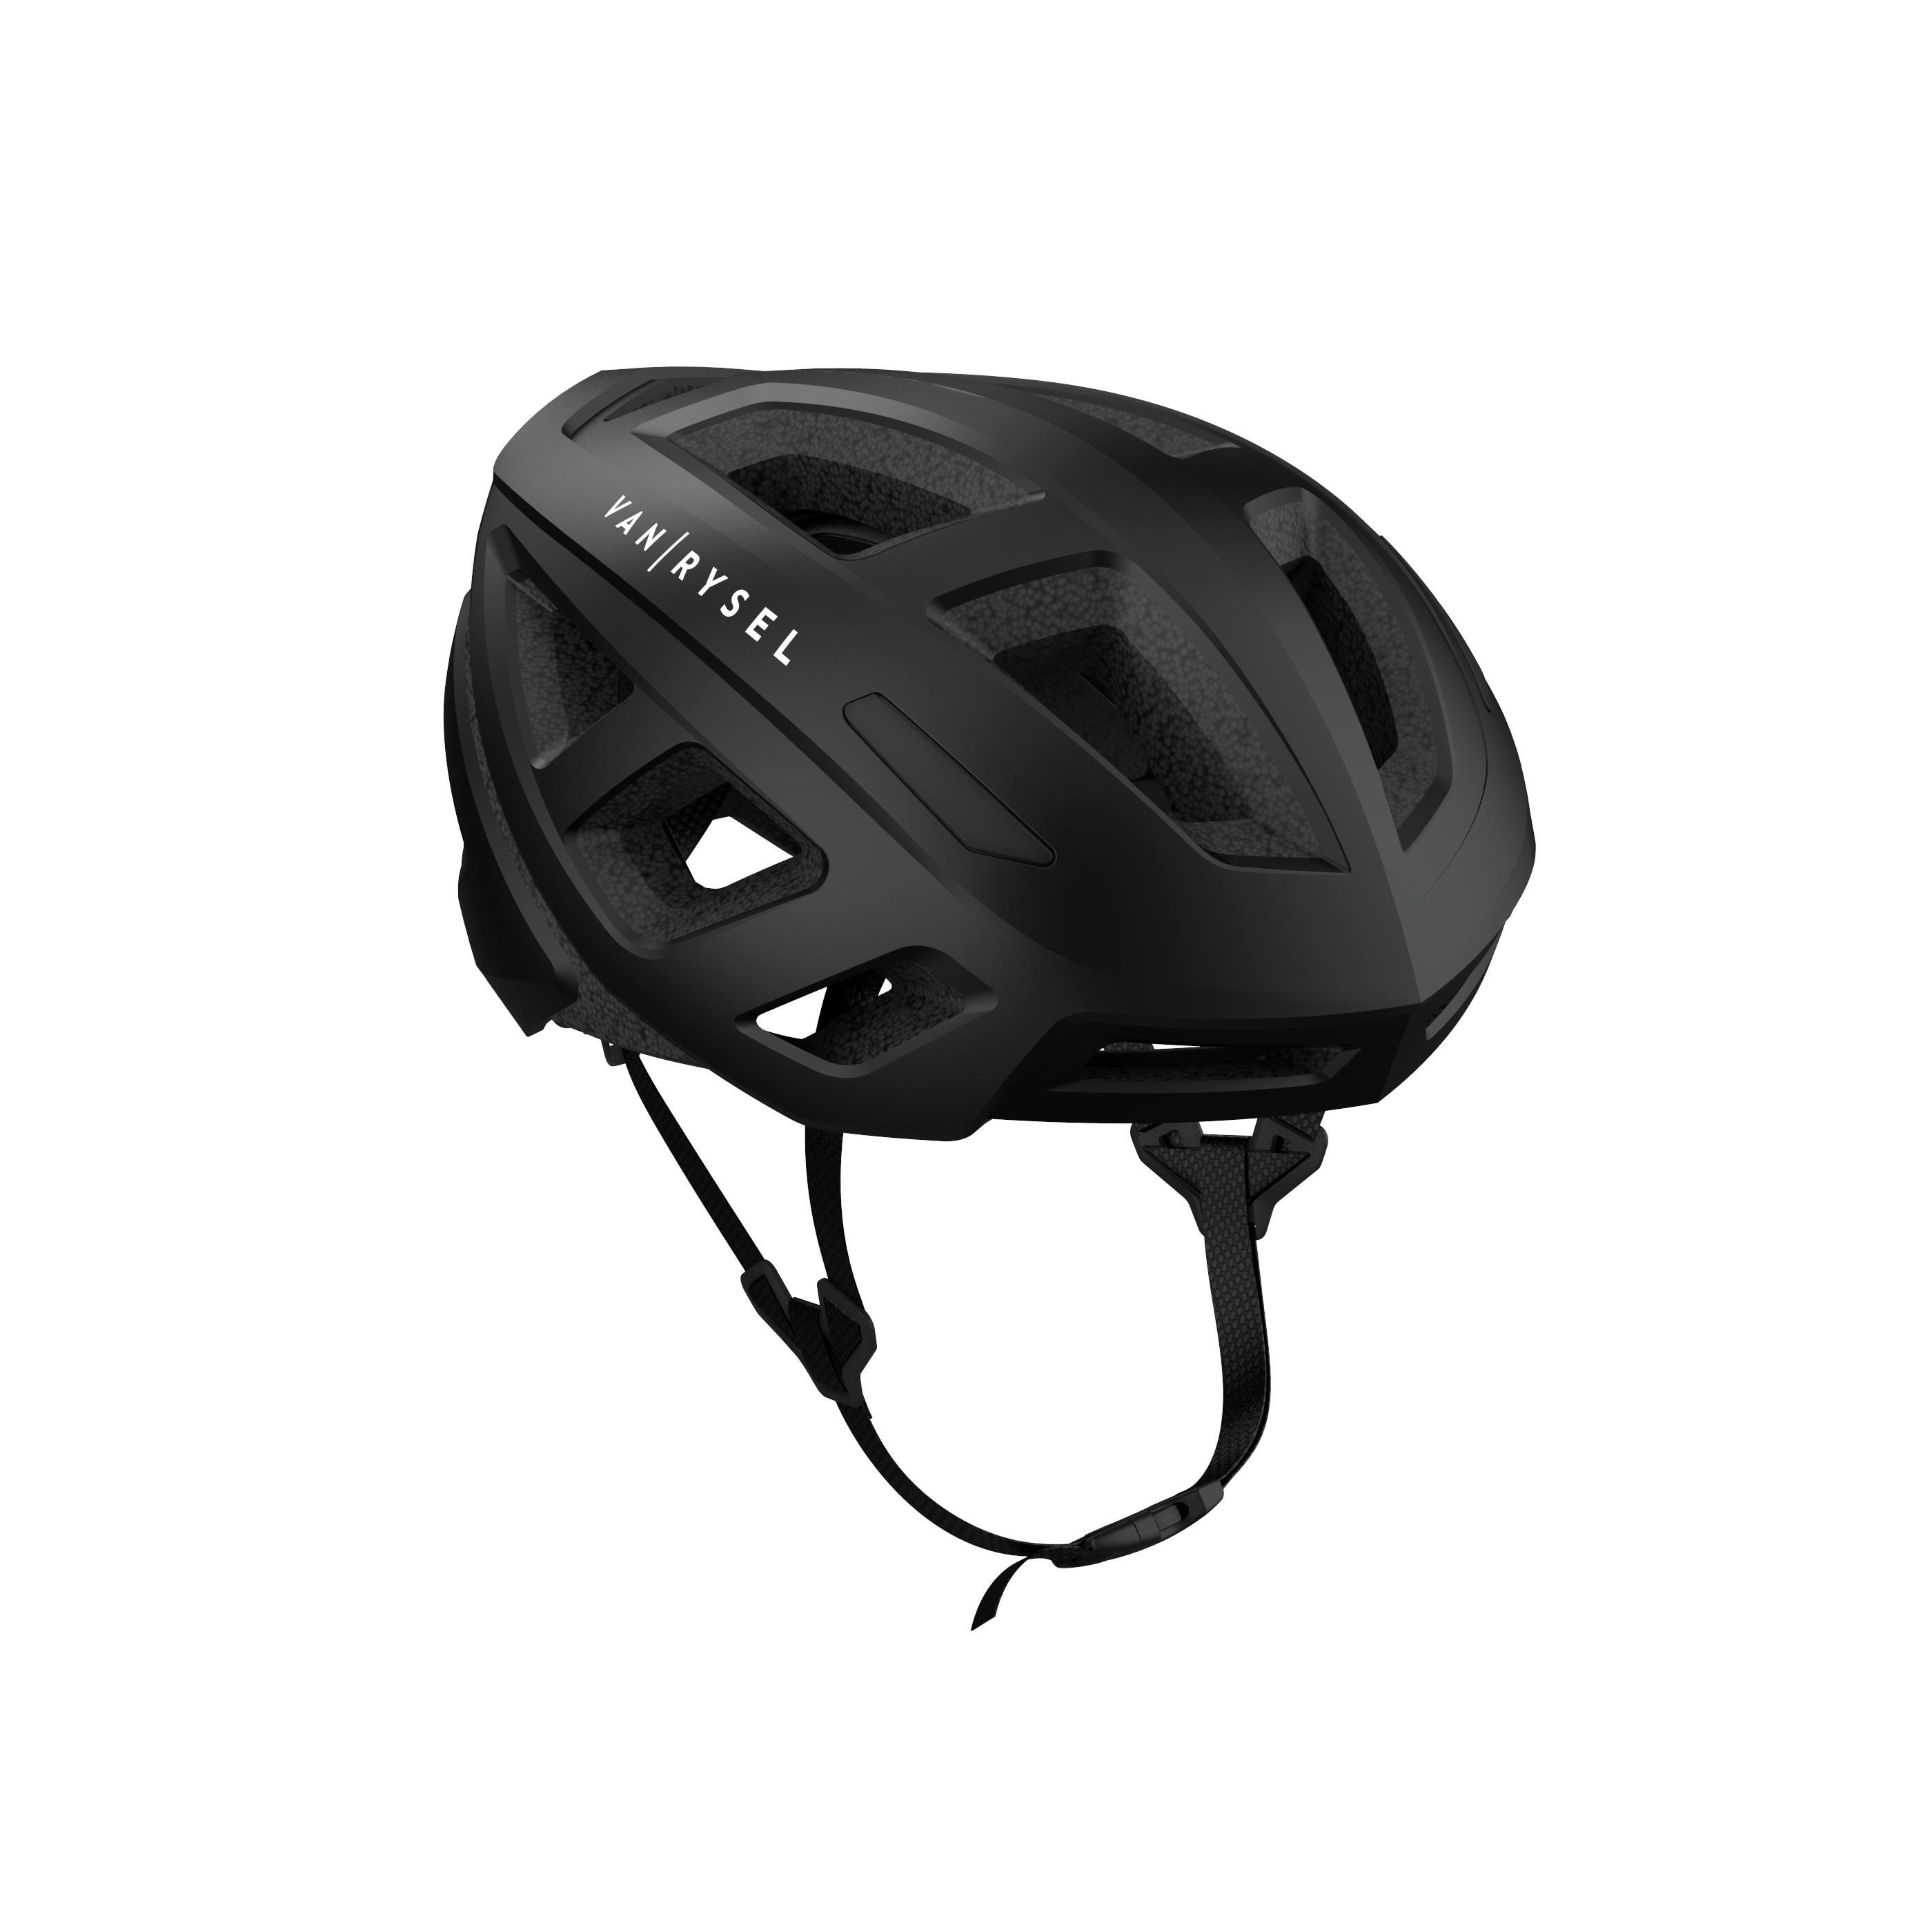 RoadR 500 Road Cycling Helmet - Black 1/6